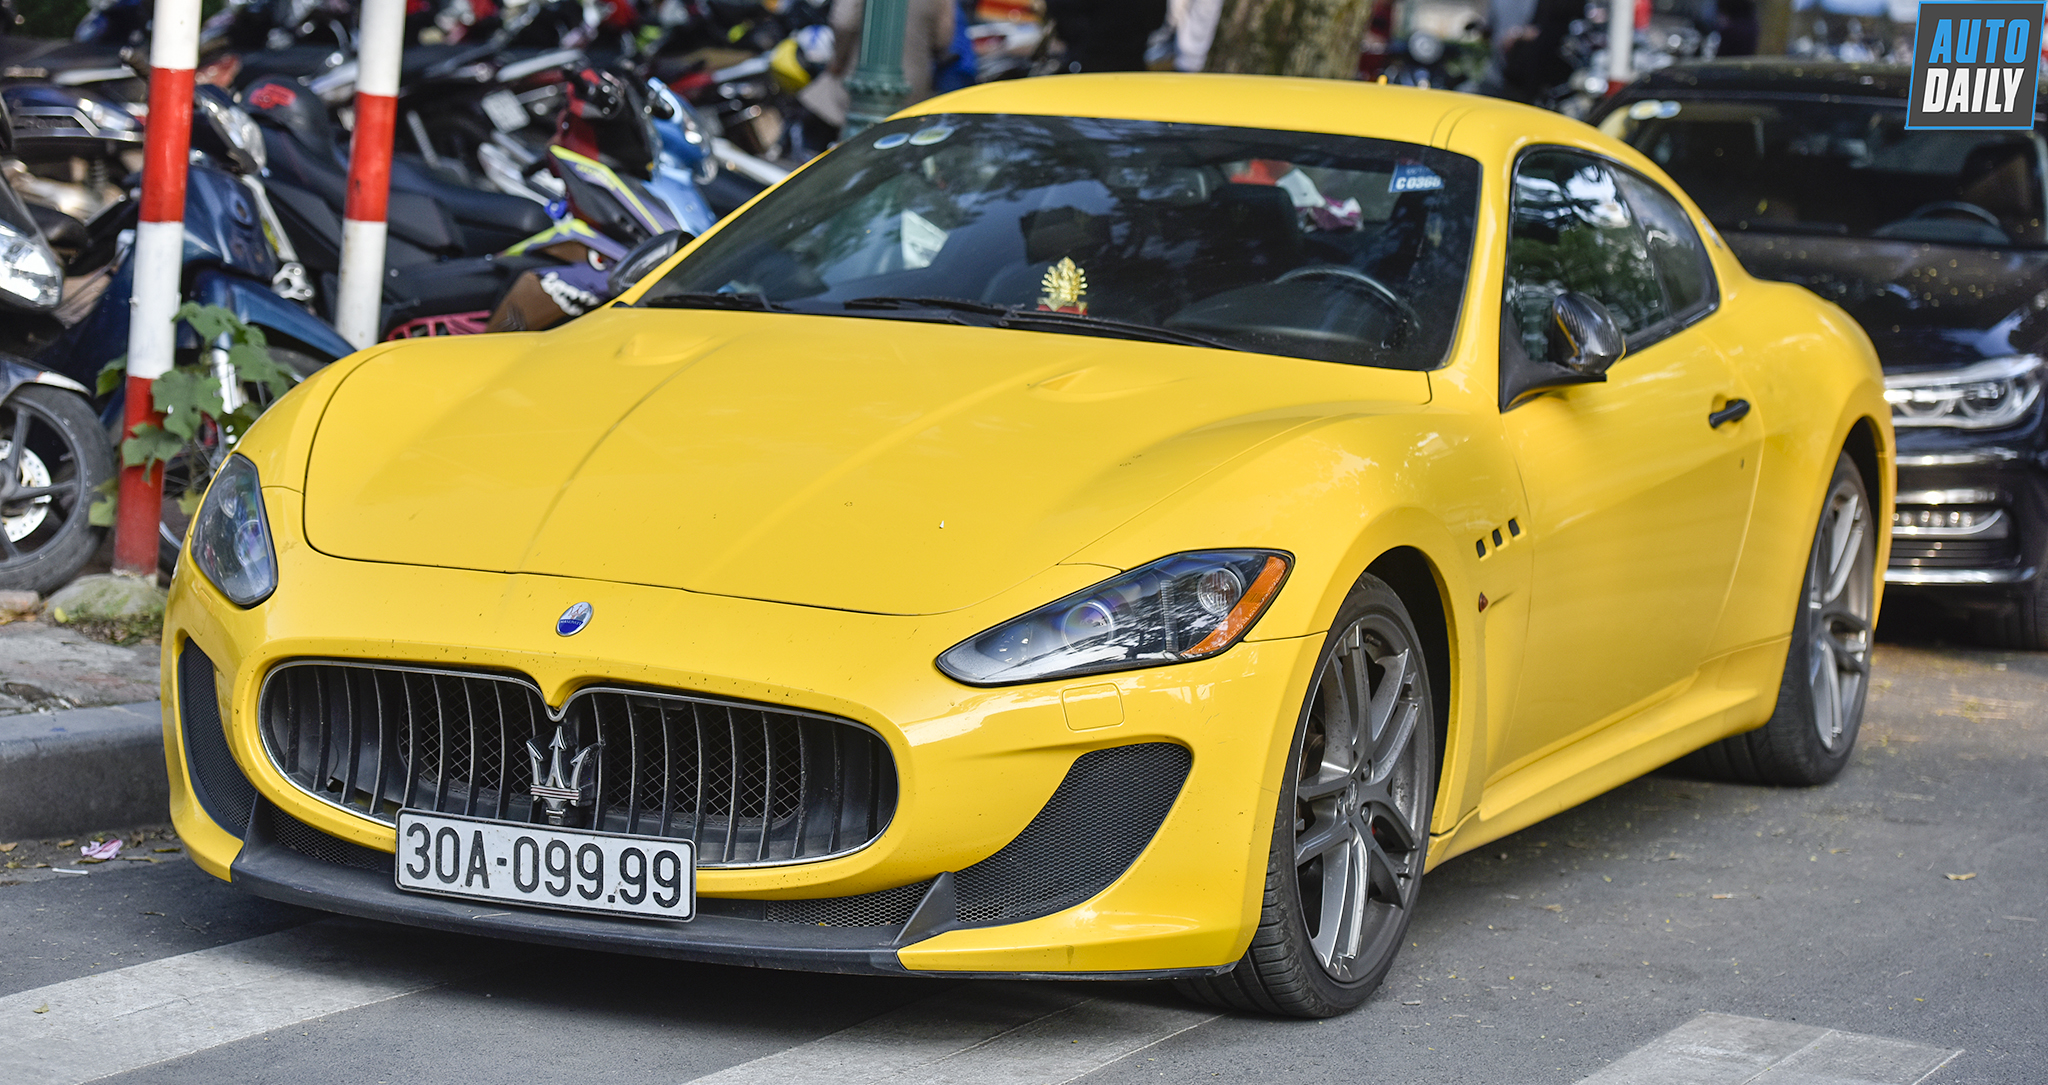 Năm mới ngắm "Mai vàng" Maserati biển tứ 9 tại Hà Nội